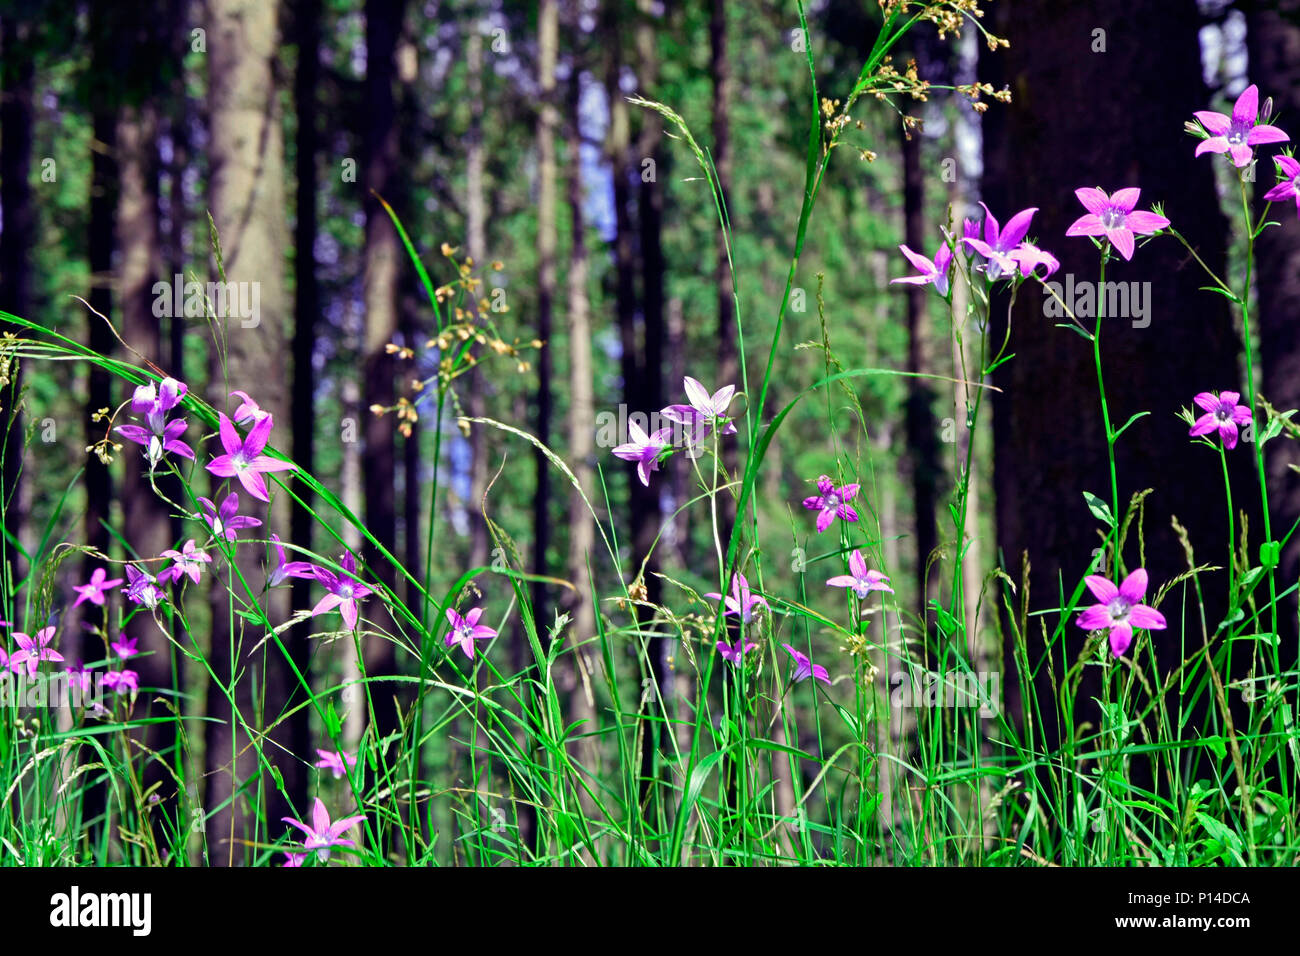 Vue perspective de la masse dans les bois par purple fleurs sauvages et d'herbe verte Banque D'Images